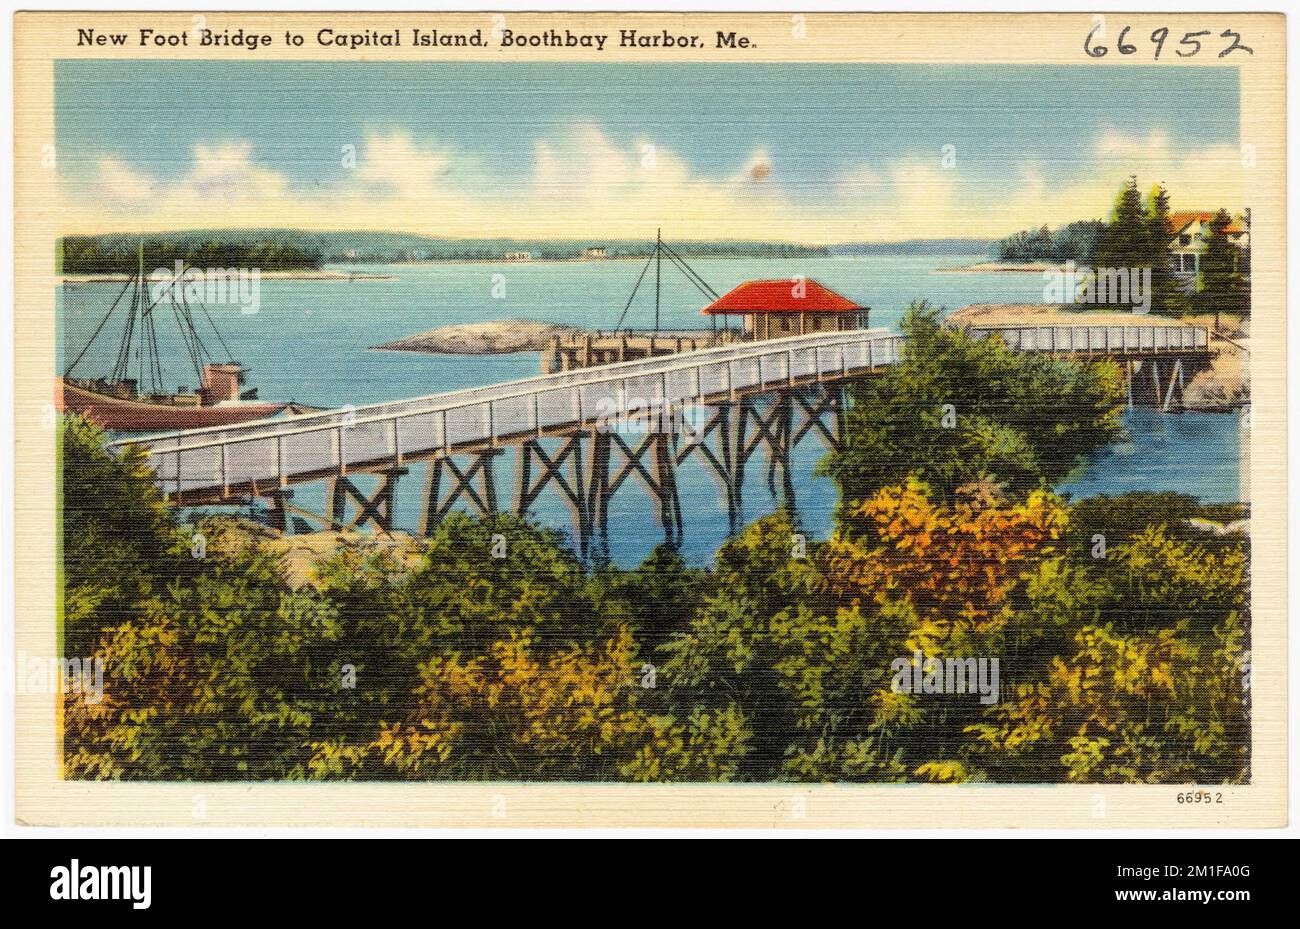 Nouveau pont à pied vers Capital Island, port de Boothbay, Mé. , Bridges, Tichnor Brothers Collection, cartes postales des États-Unis Banque D'Images